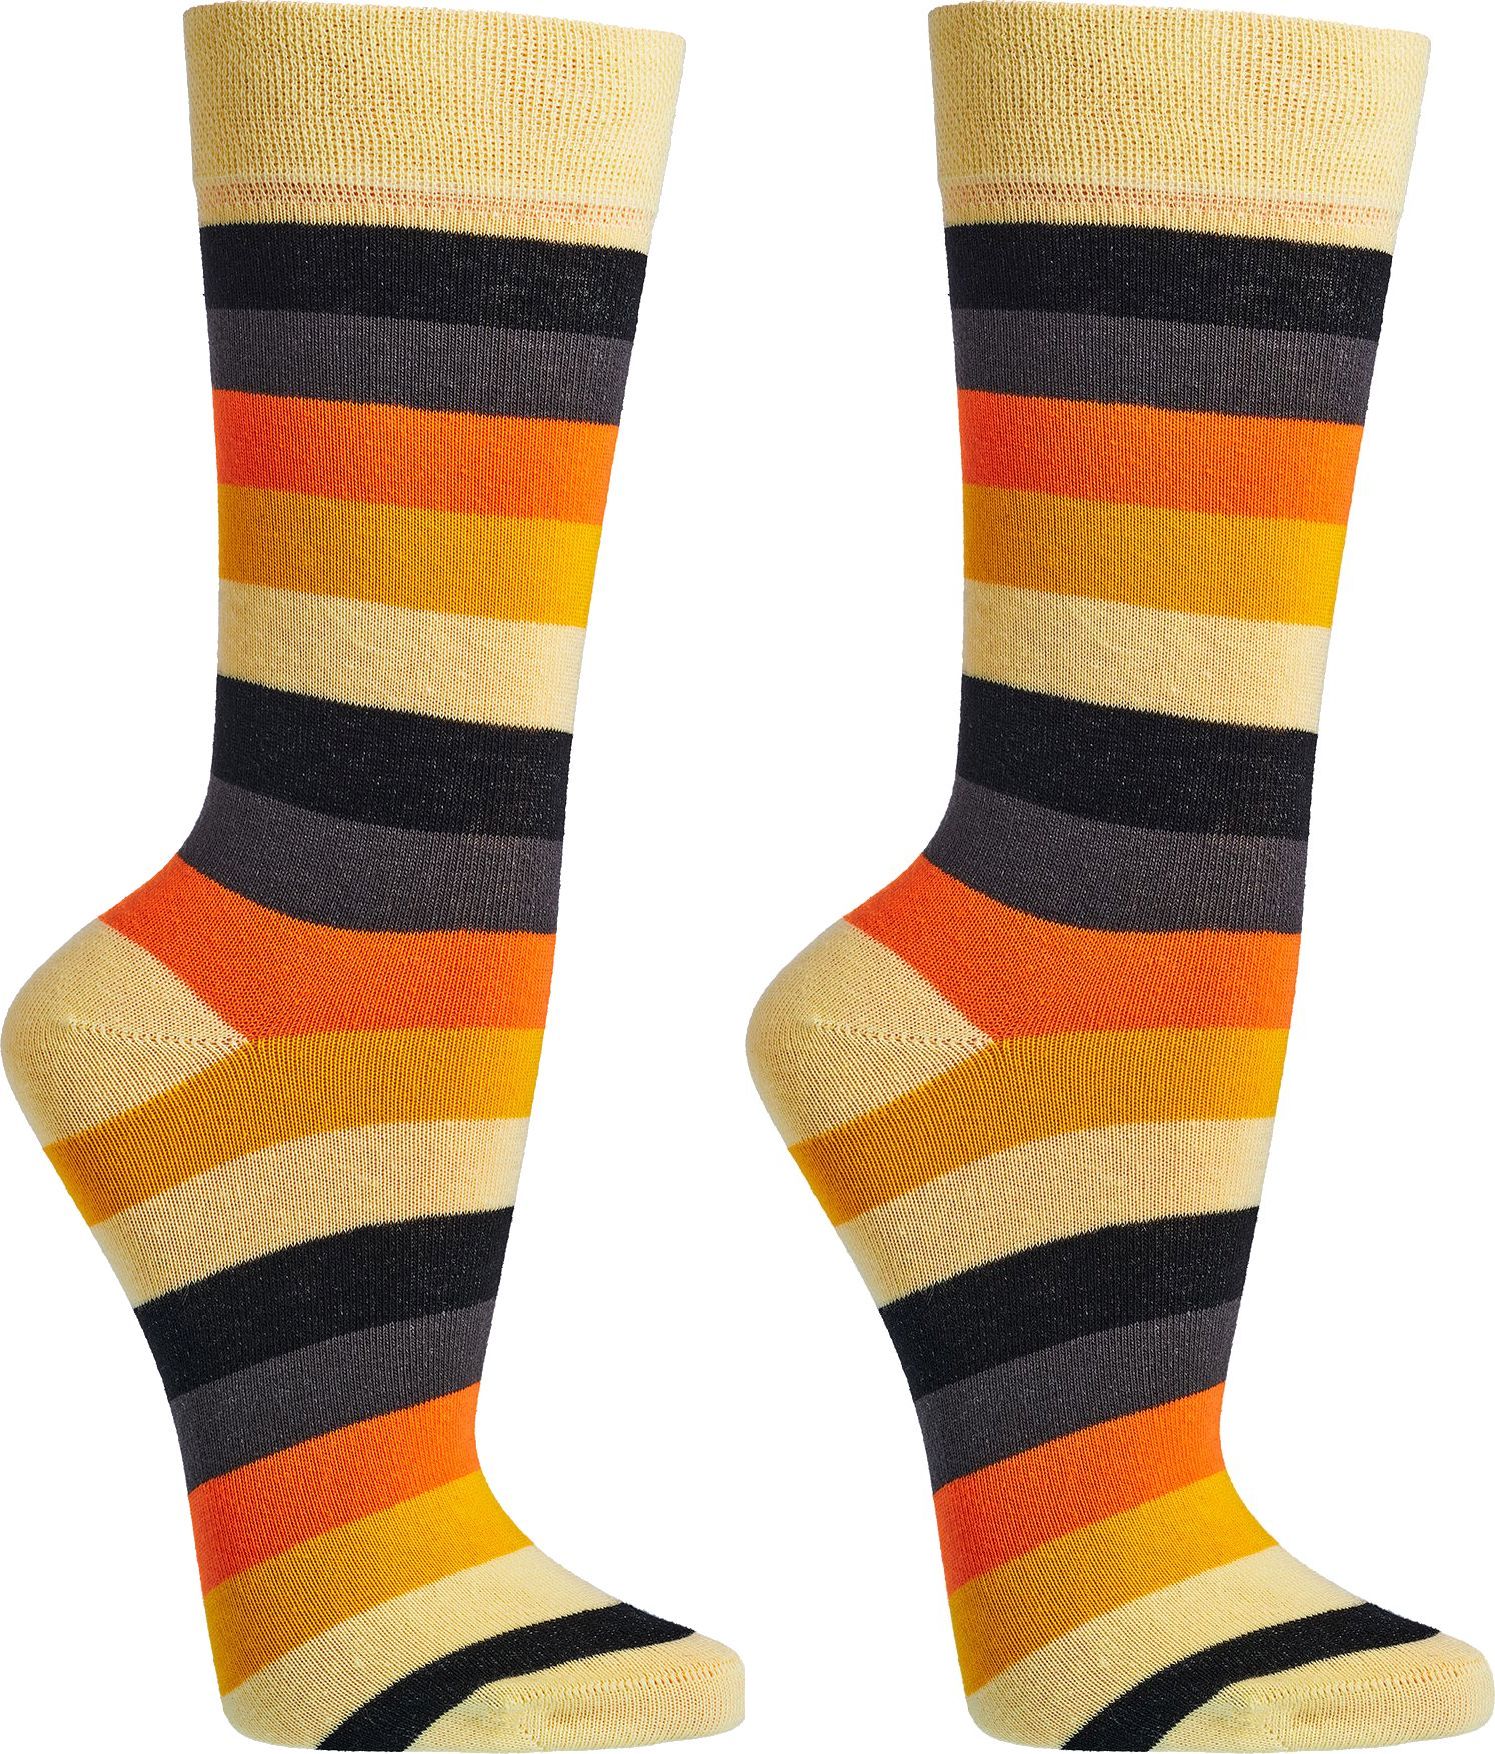 Trend-Socken Bio Baumwolle für Teenager, Damen und Herren 2 oder 4 Paar